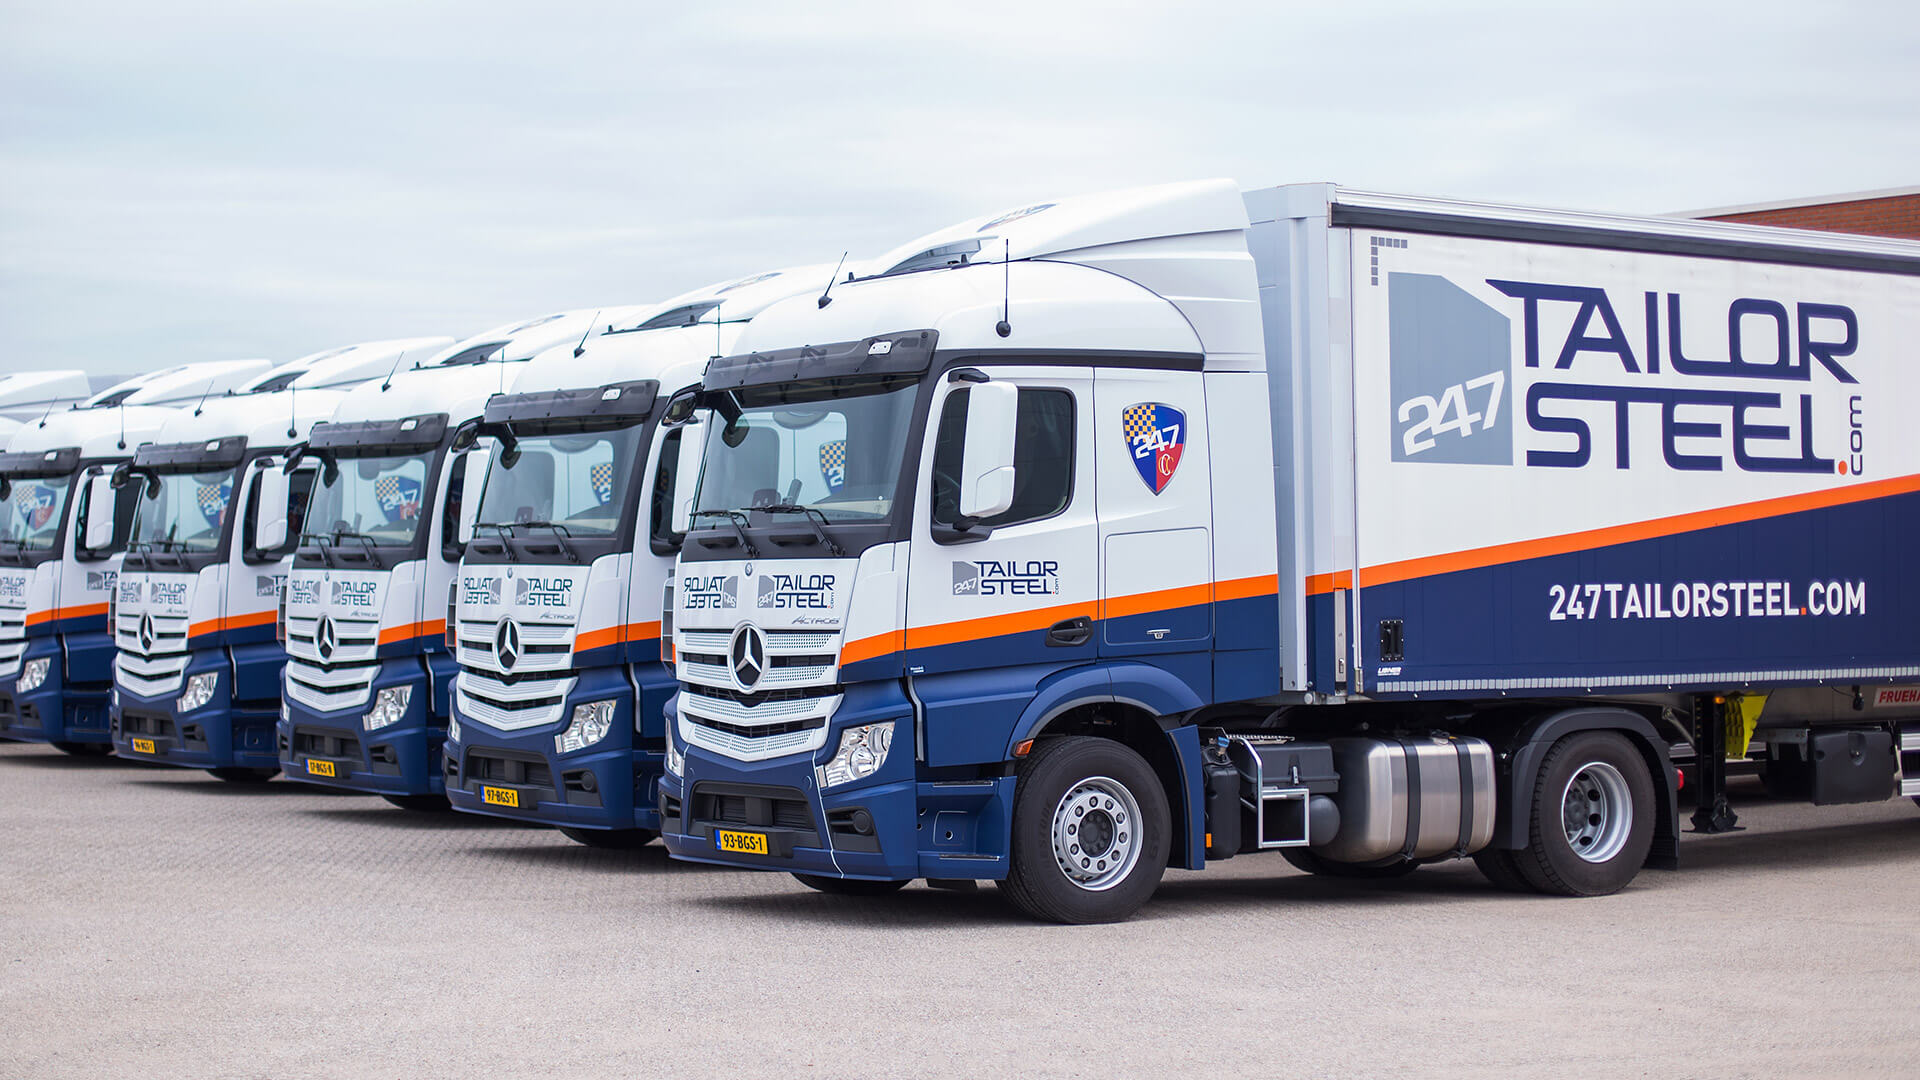 Our own logistics fleet